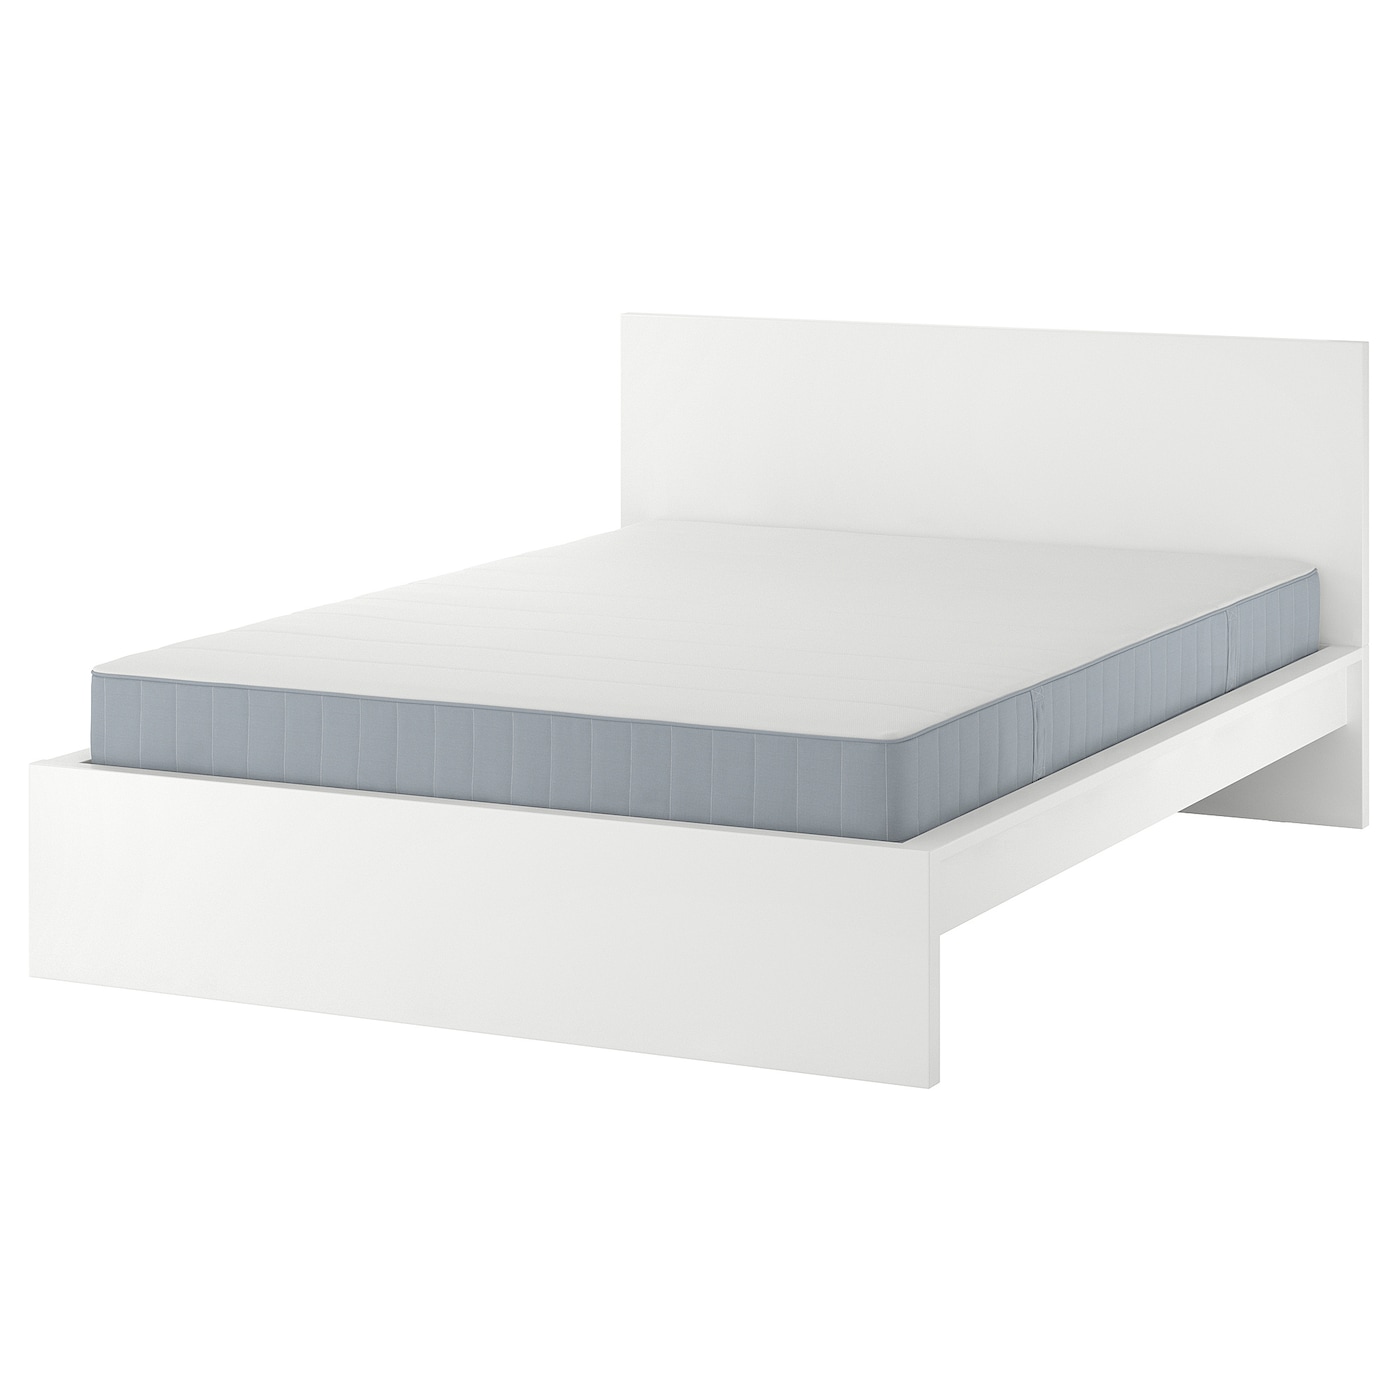 Кровать - IKEA MALM, 200х180 см, жесткий матрас, белый, МАЛЬМ ИКЕА